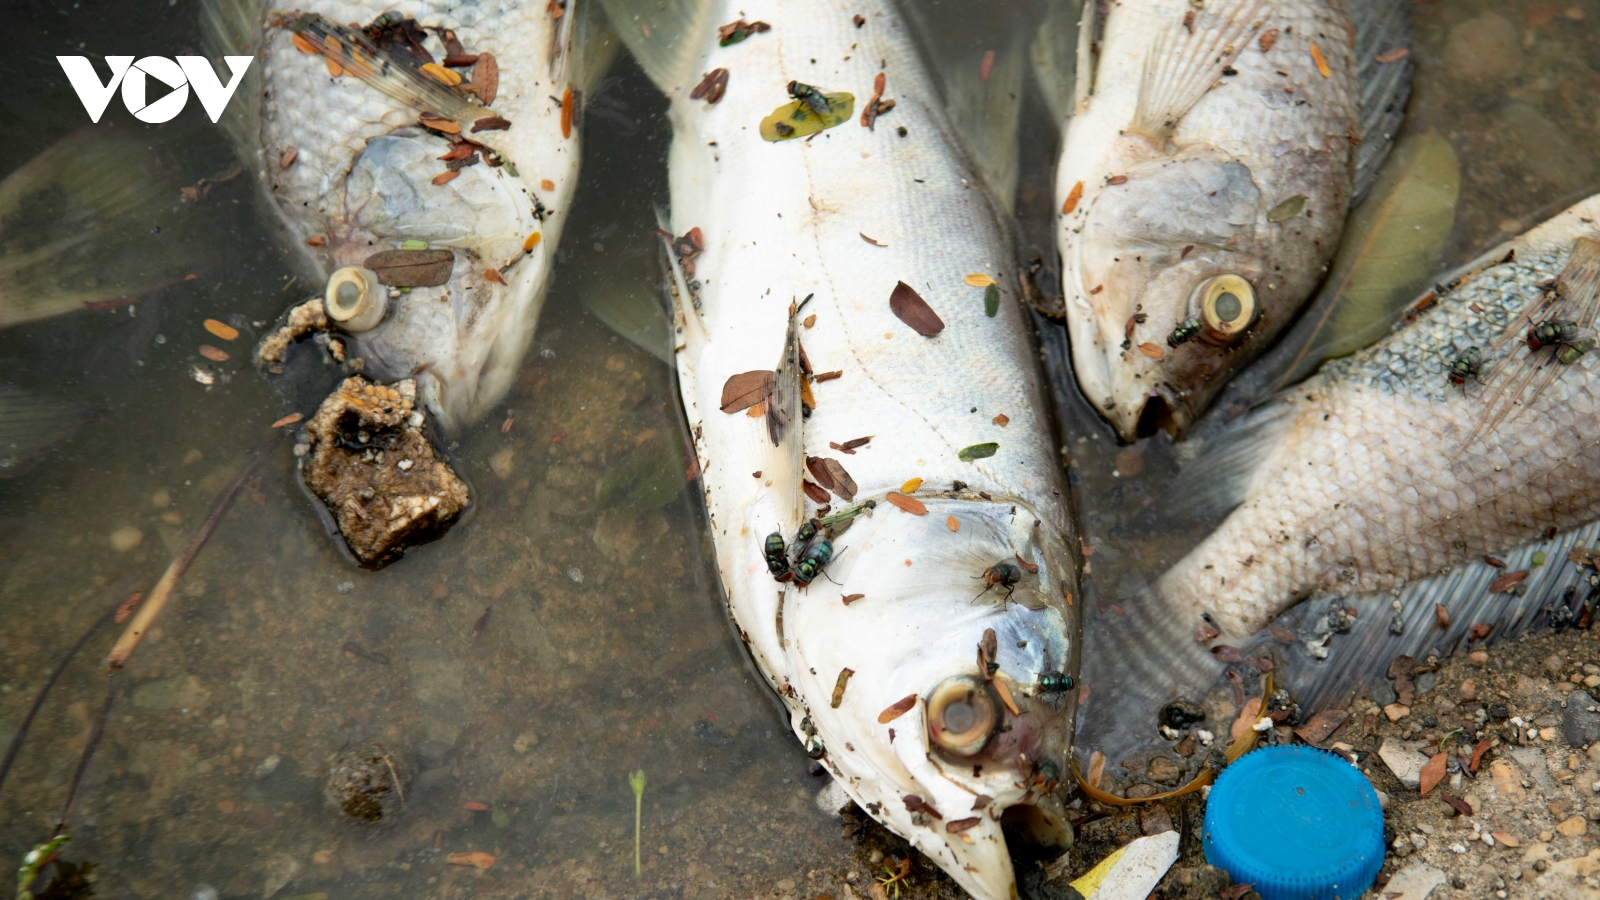 Nguyên nhân cá chết hồ Linh Đàm được xác định là do mưa lớn, thiếu oxy